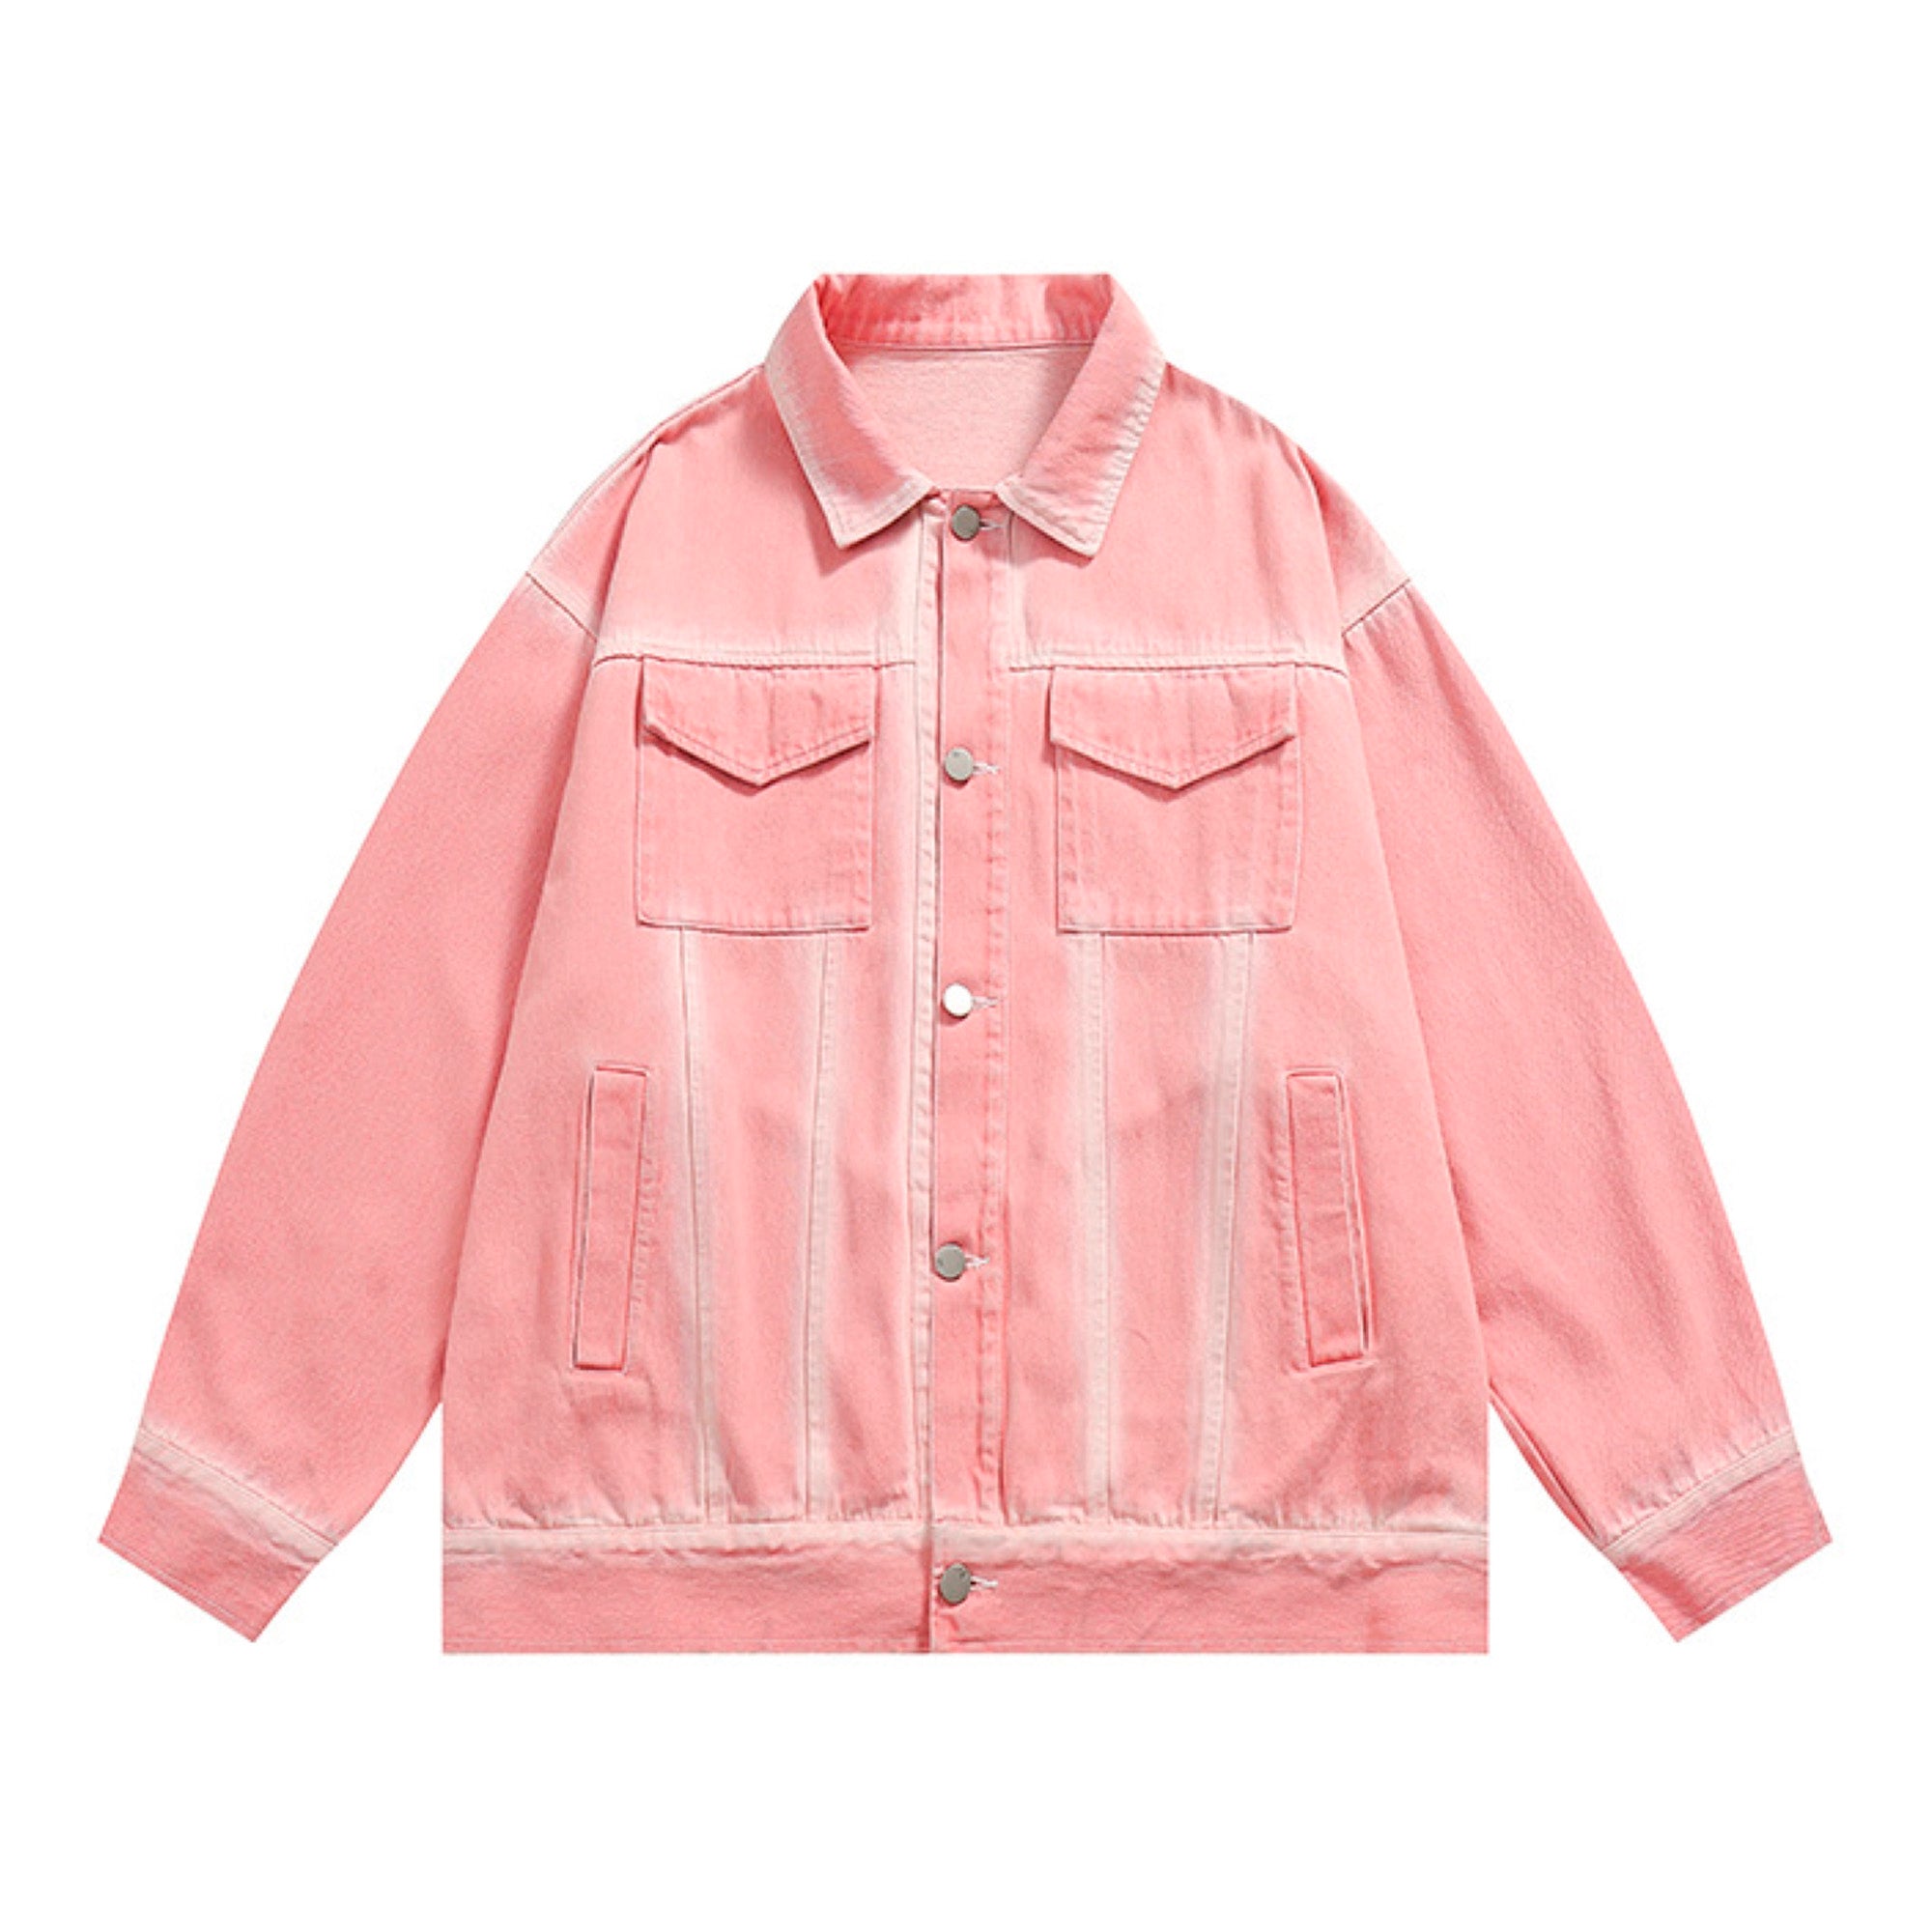 pink washed denim jacket